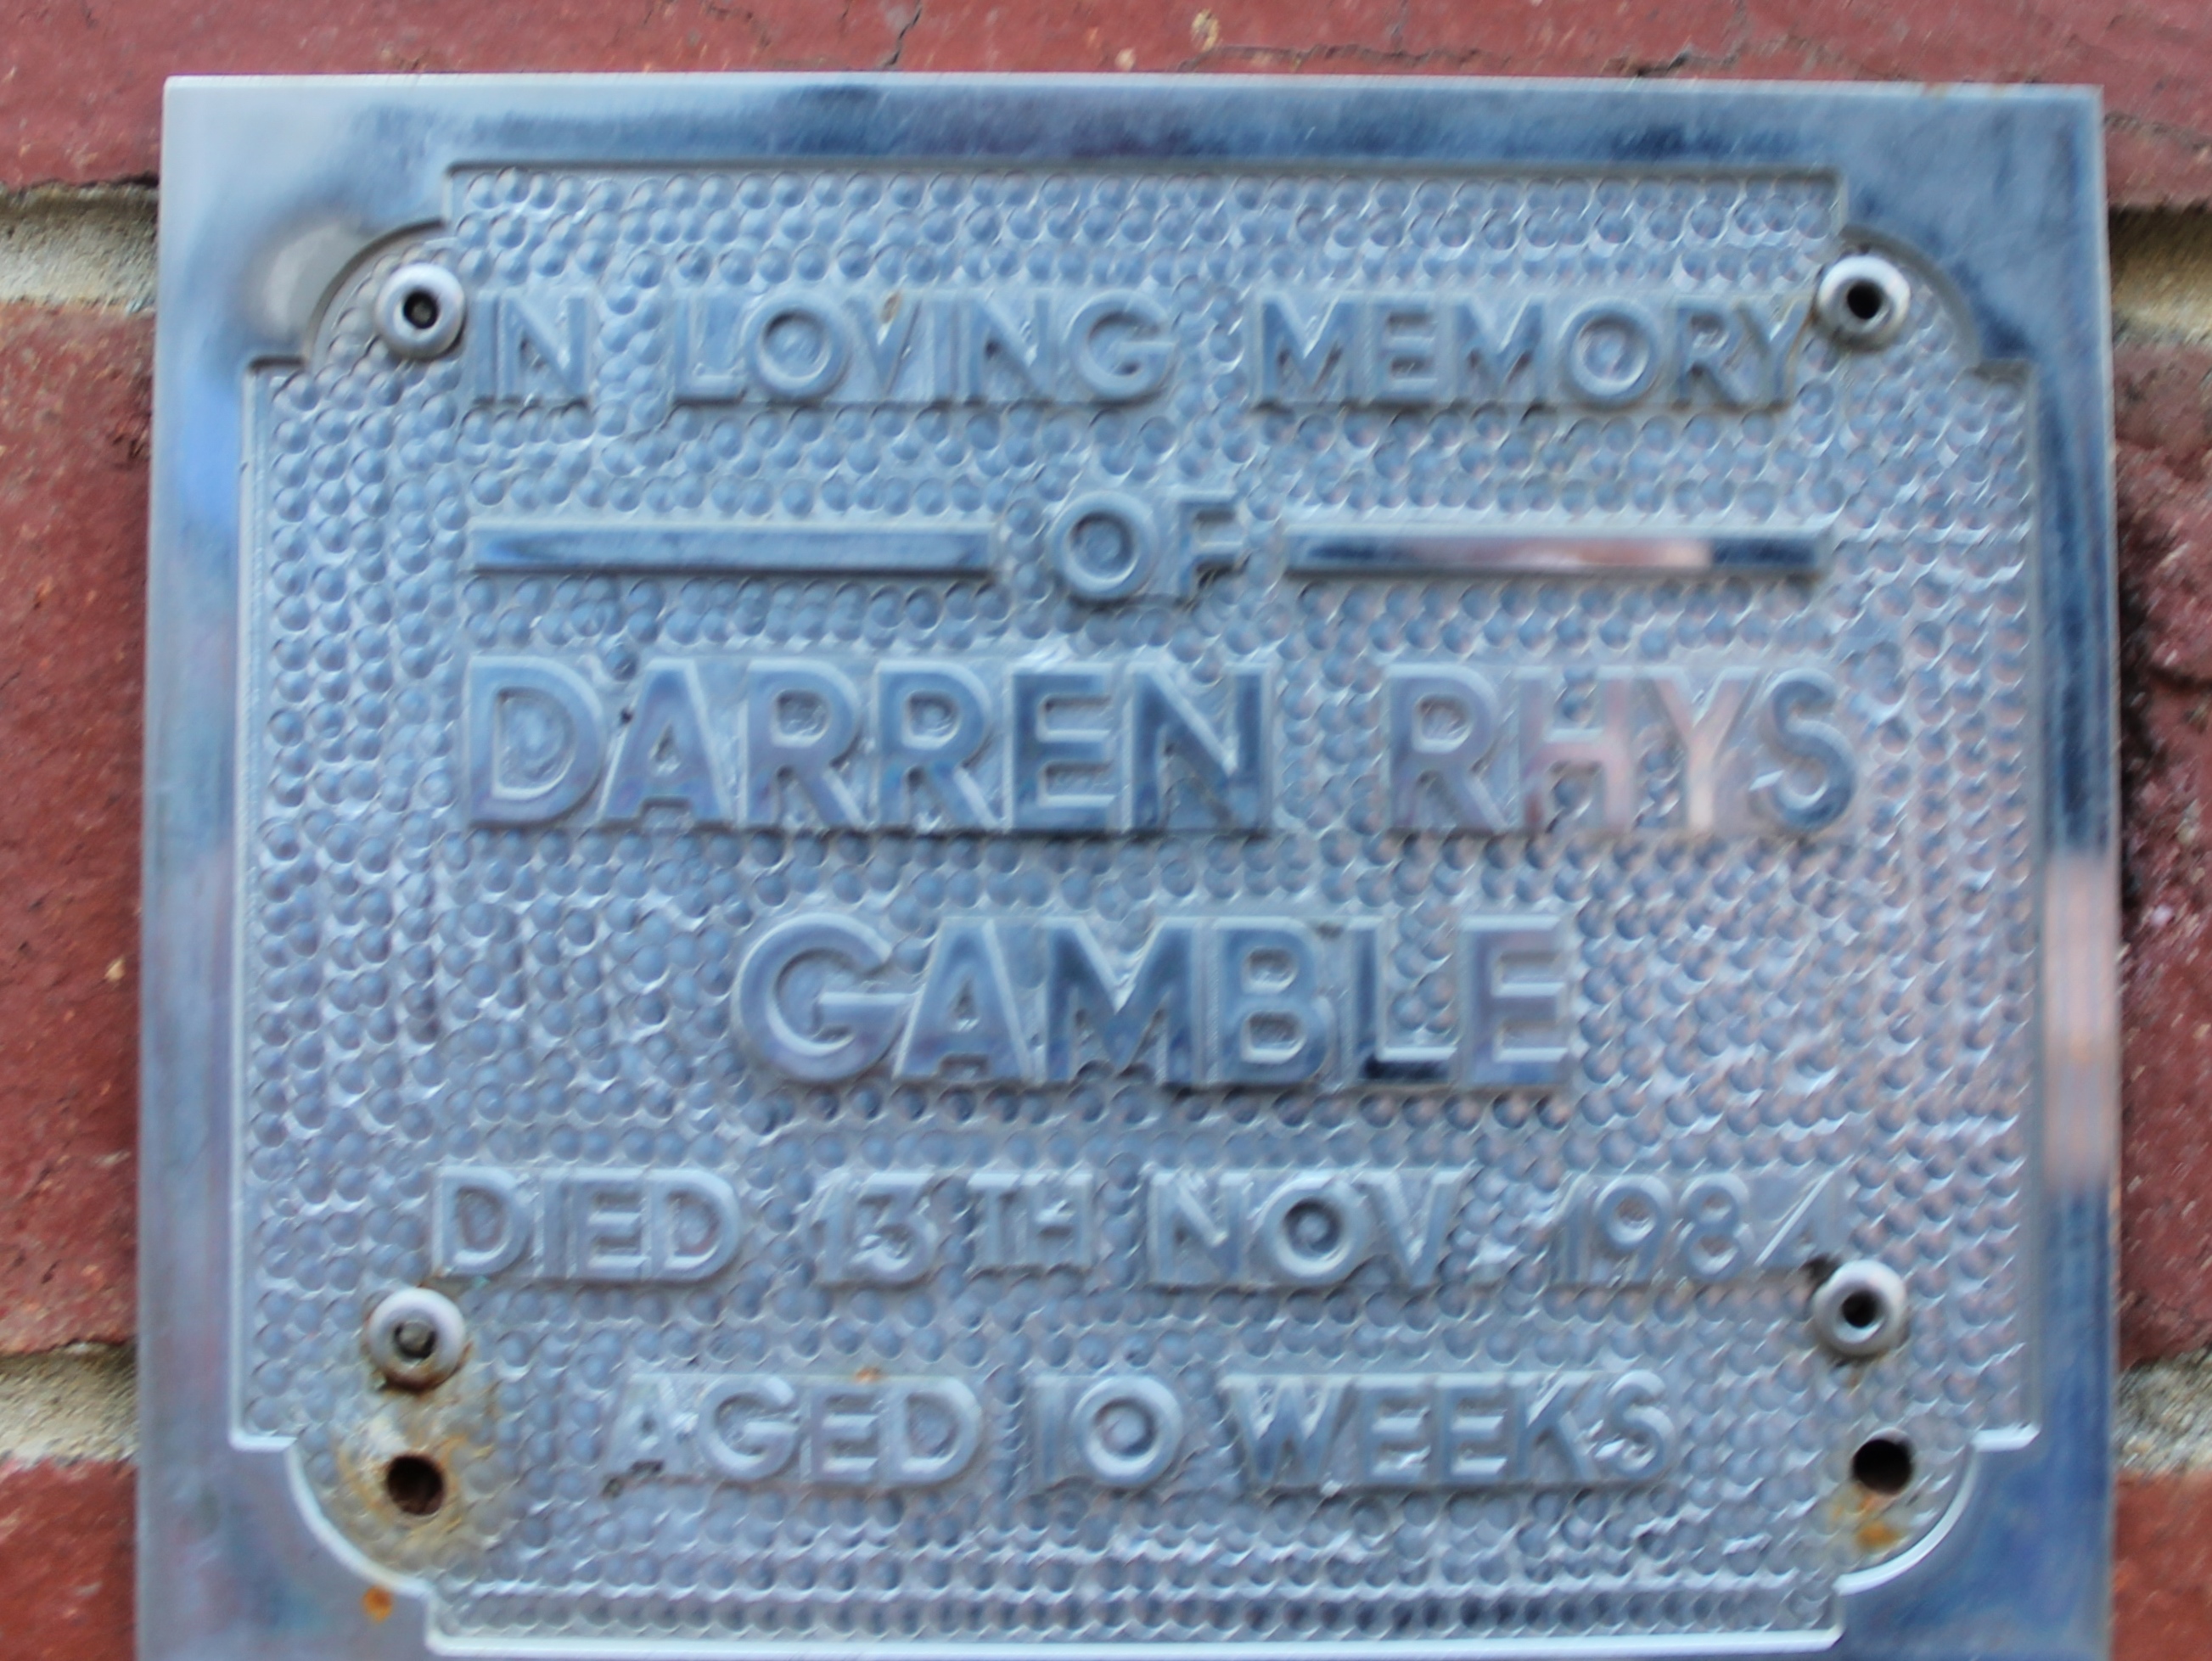 GAMBLE Darren.JPG